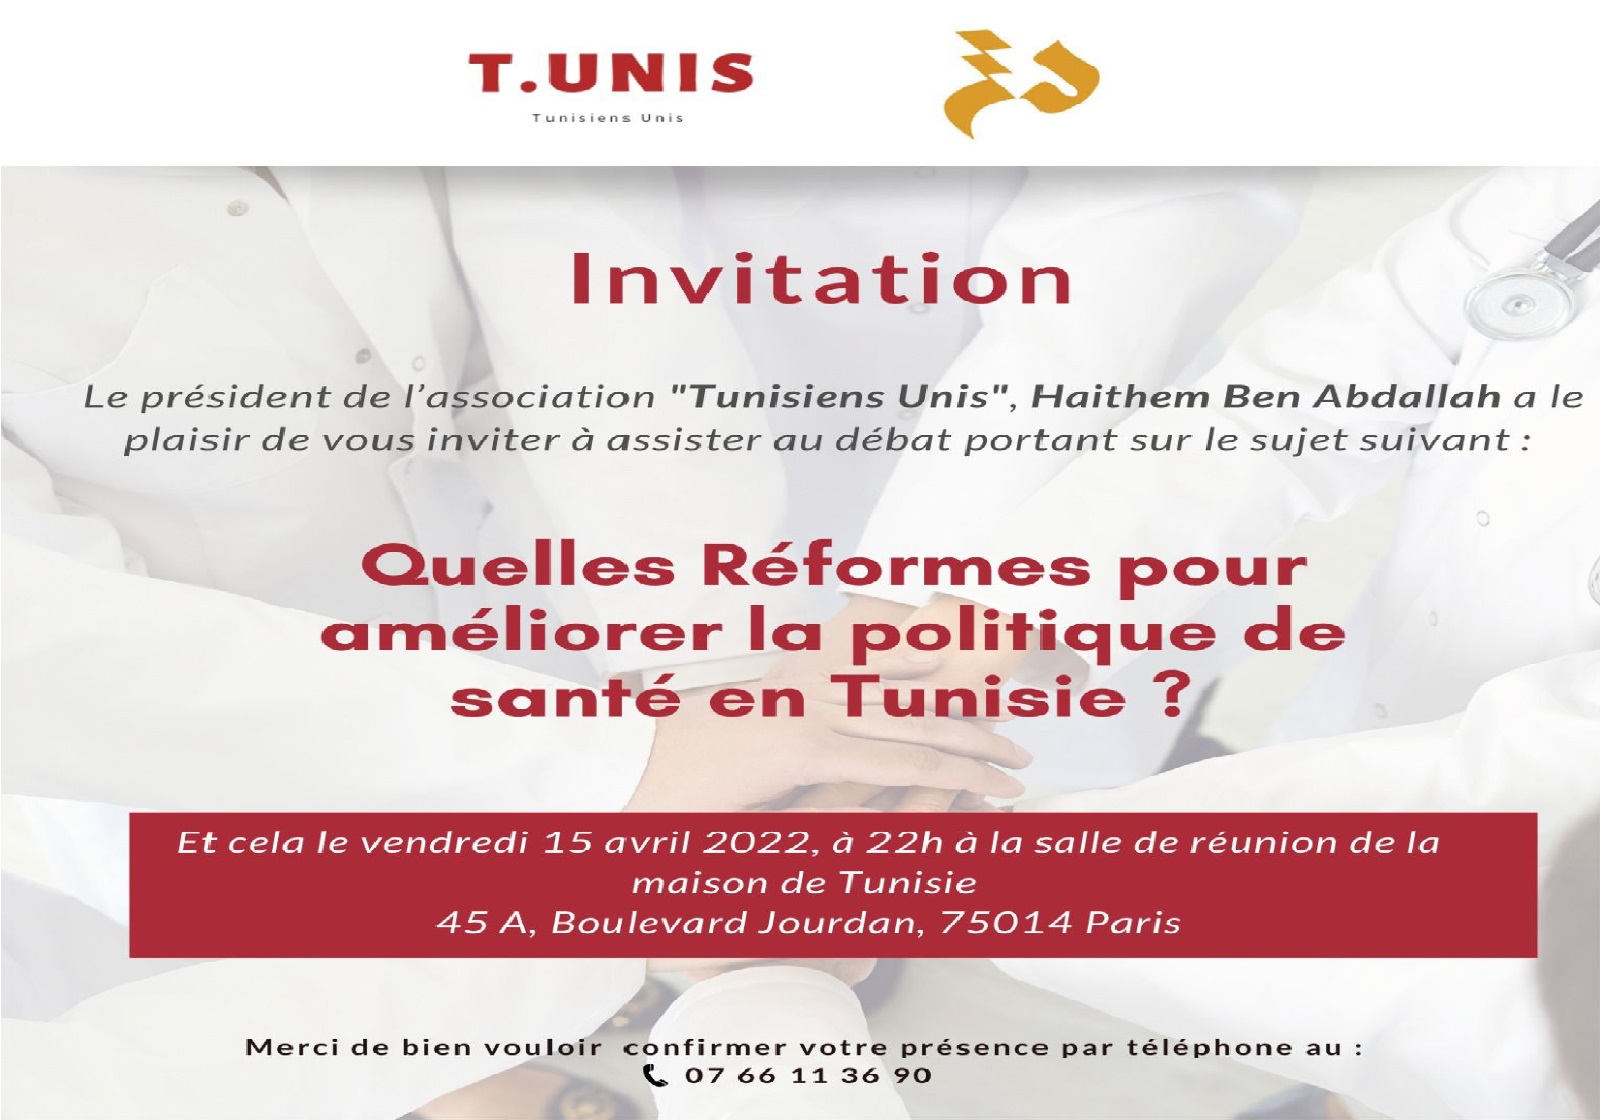 جمعية “توانسة متّحدون” T.UNIS تنظم ندوة حول القطاع الصحي بتونس و التحدّيات الجديدة